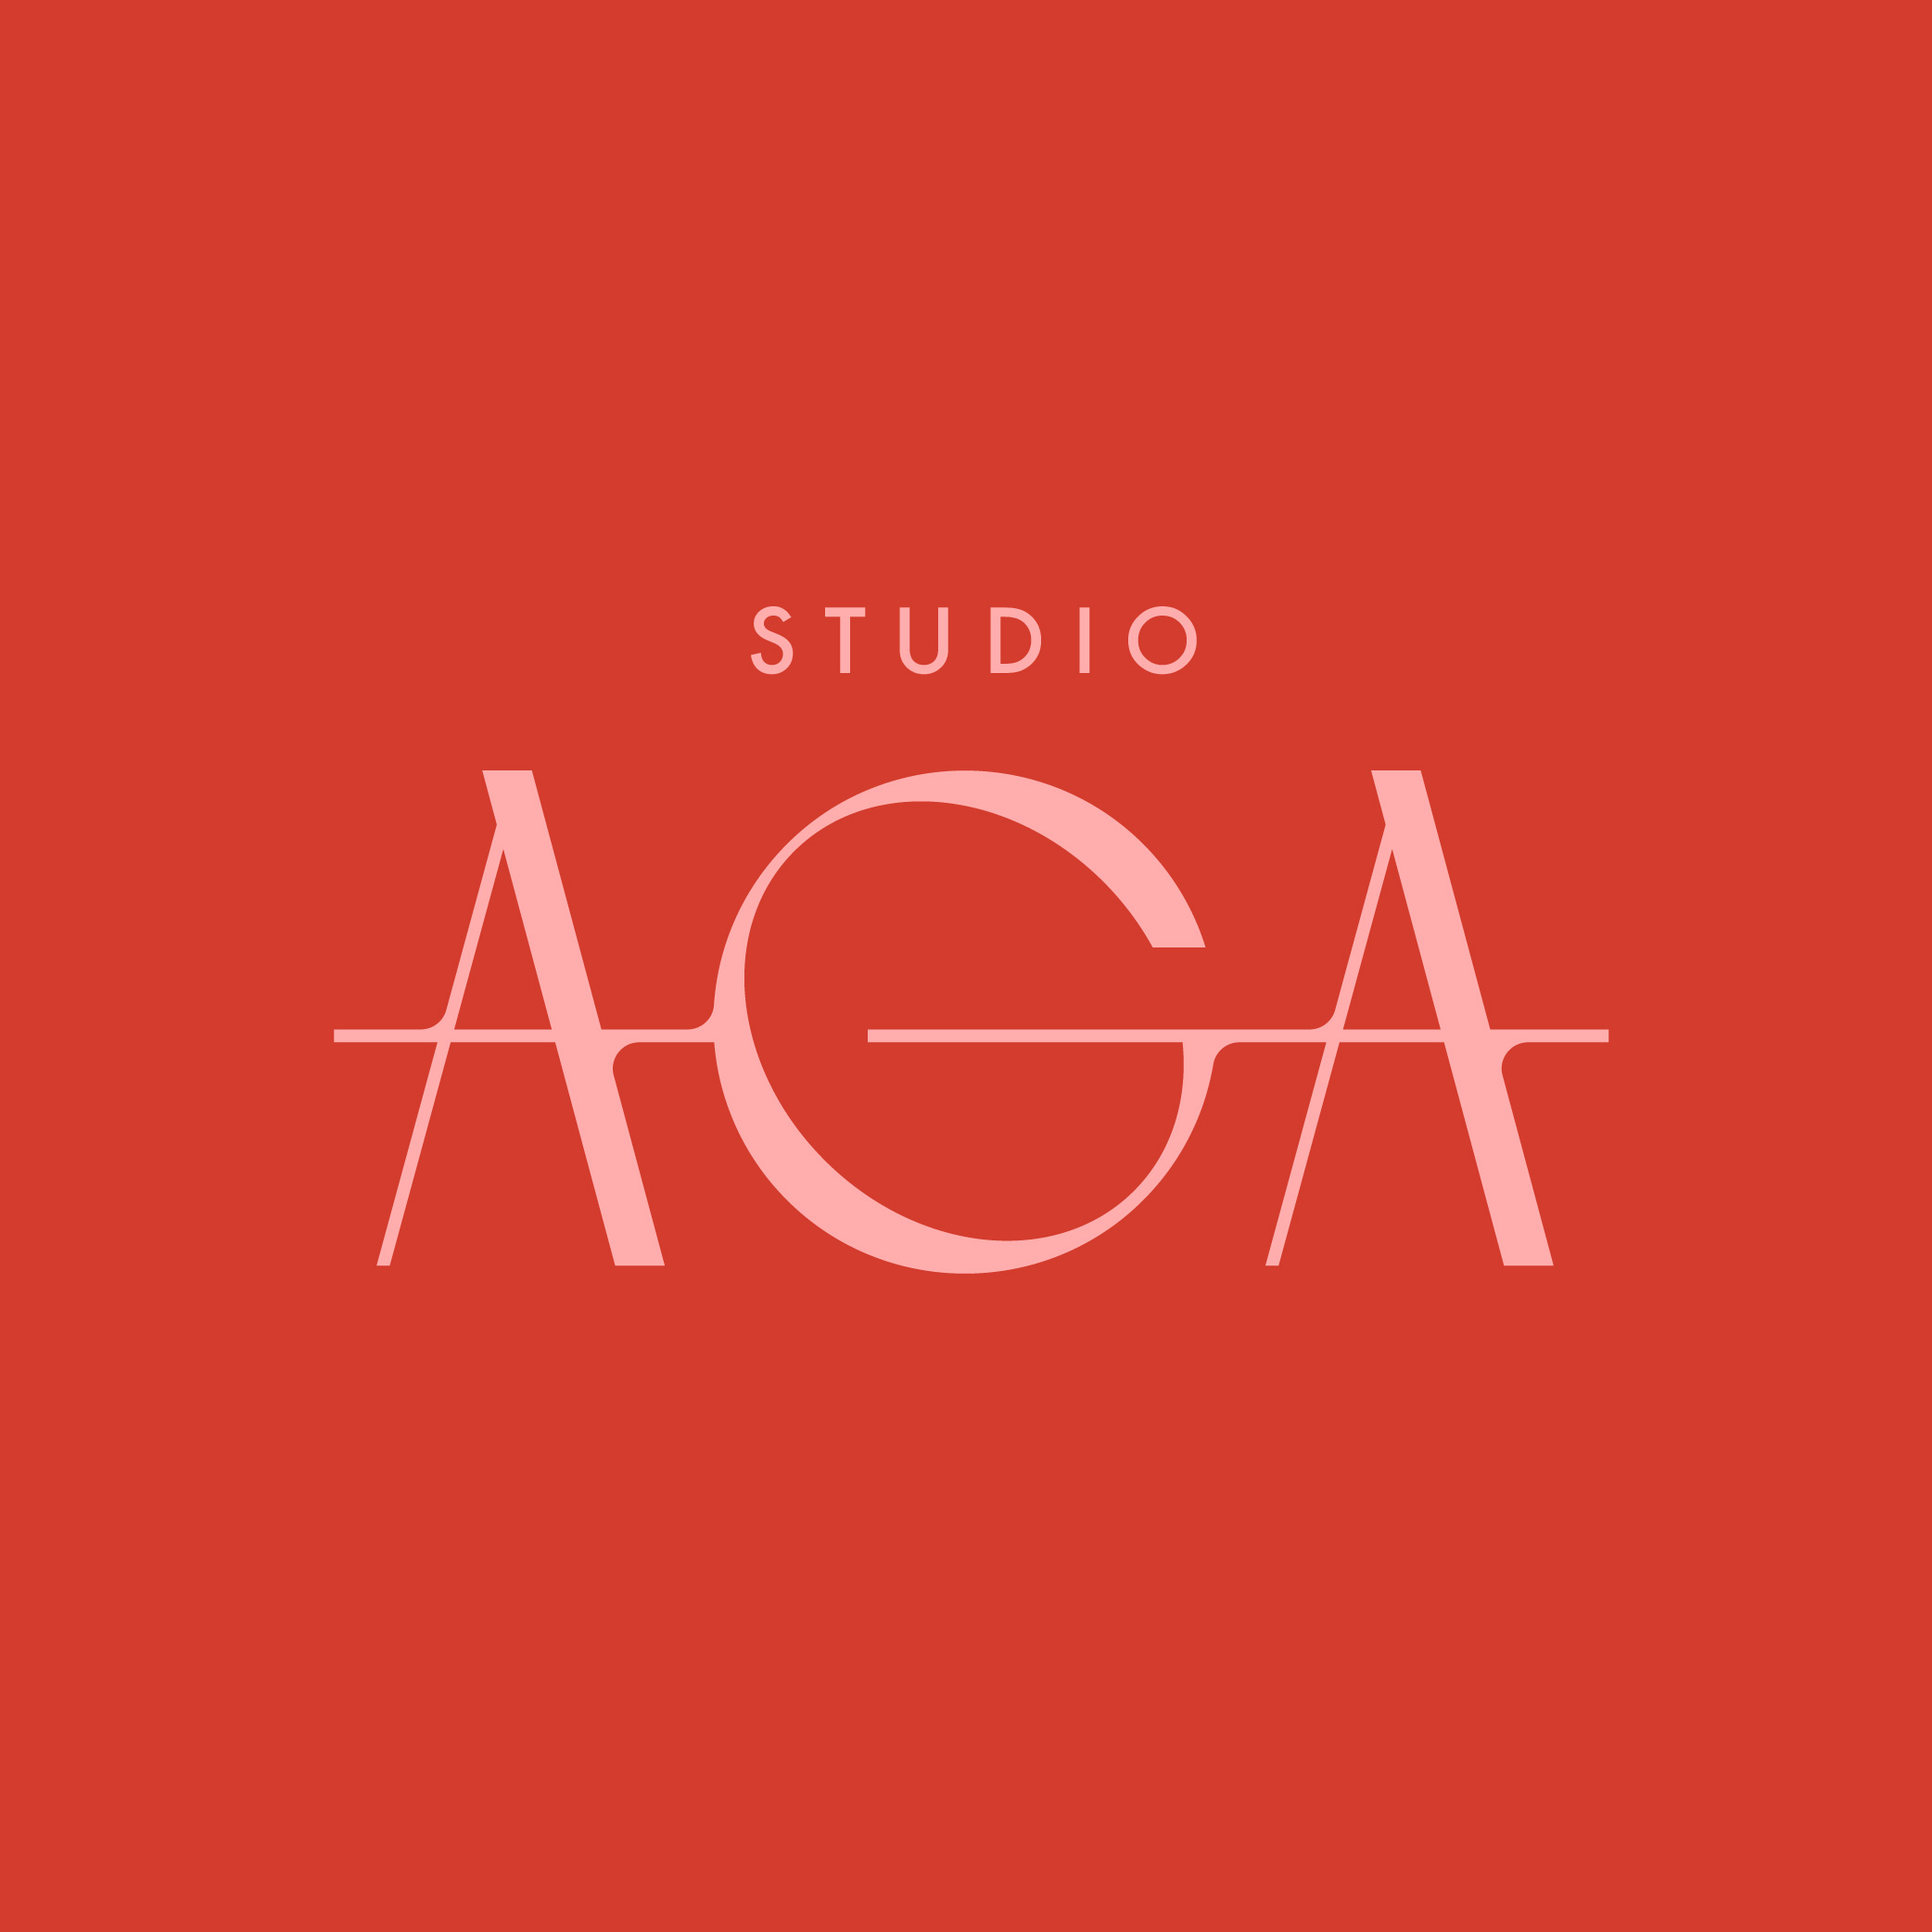 Studio AGA